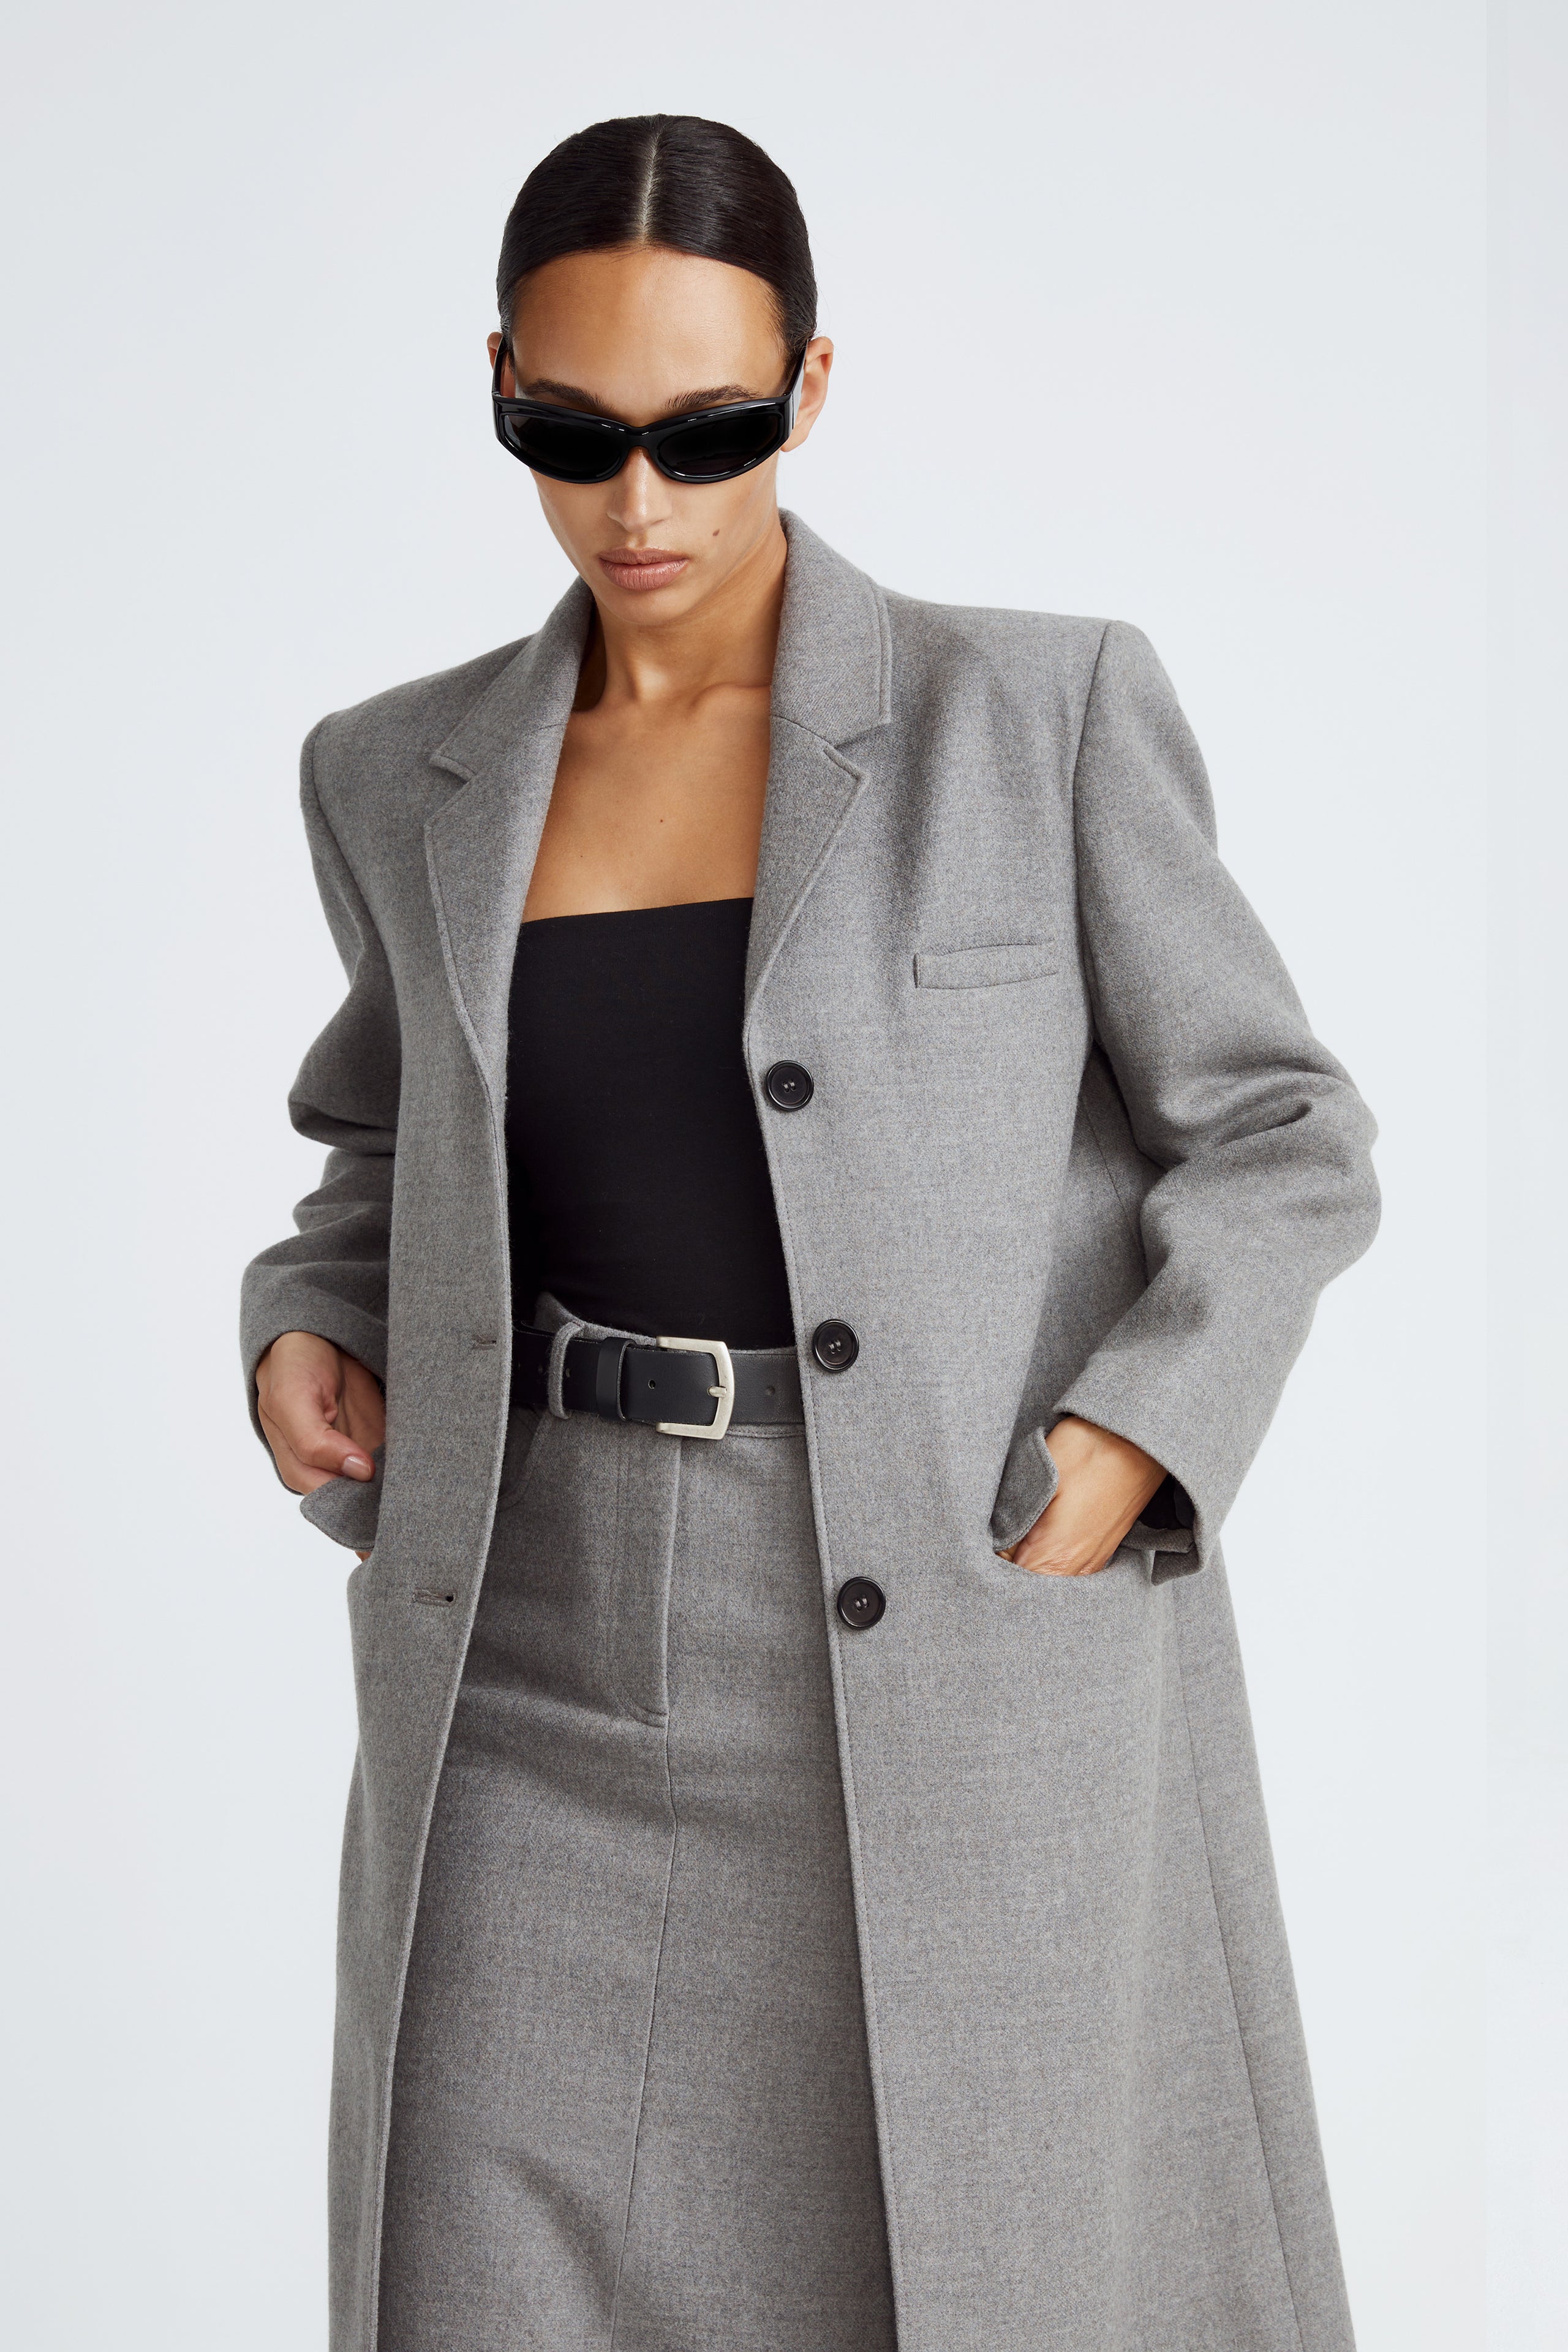 Model is wearing the Celine Light Grey Long Wool Coat Close Up